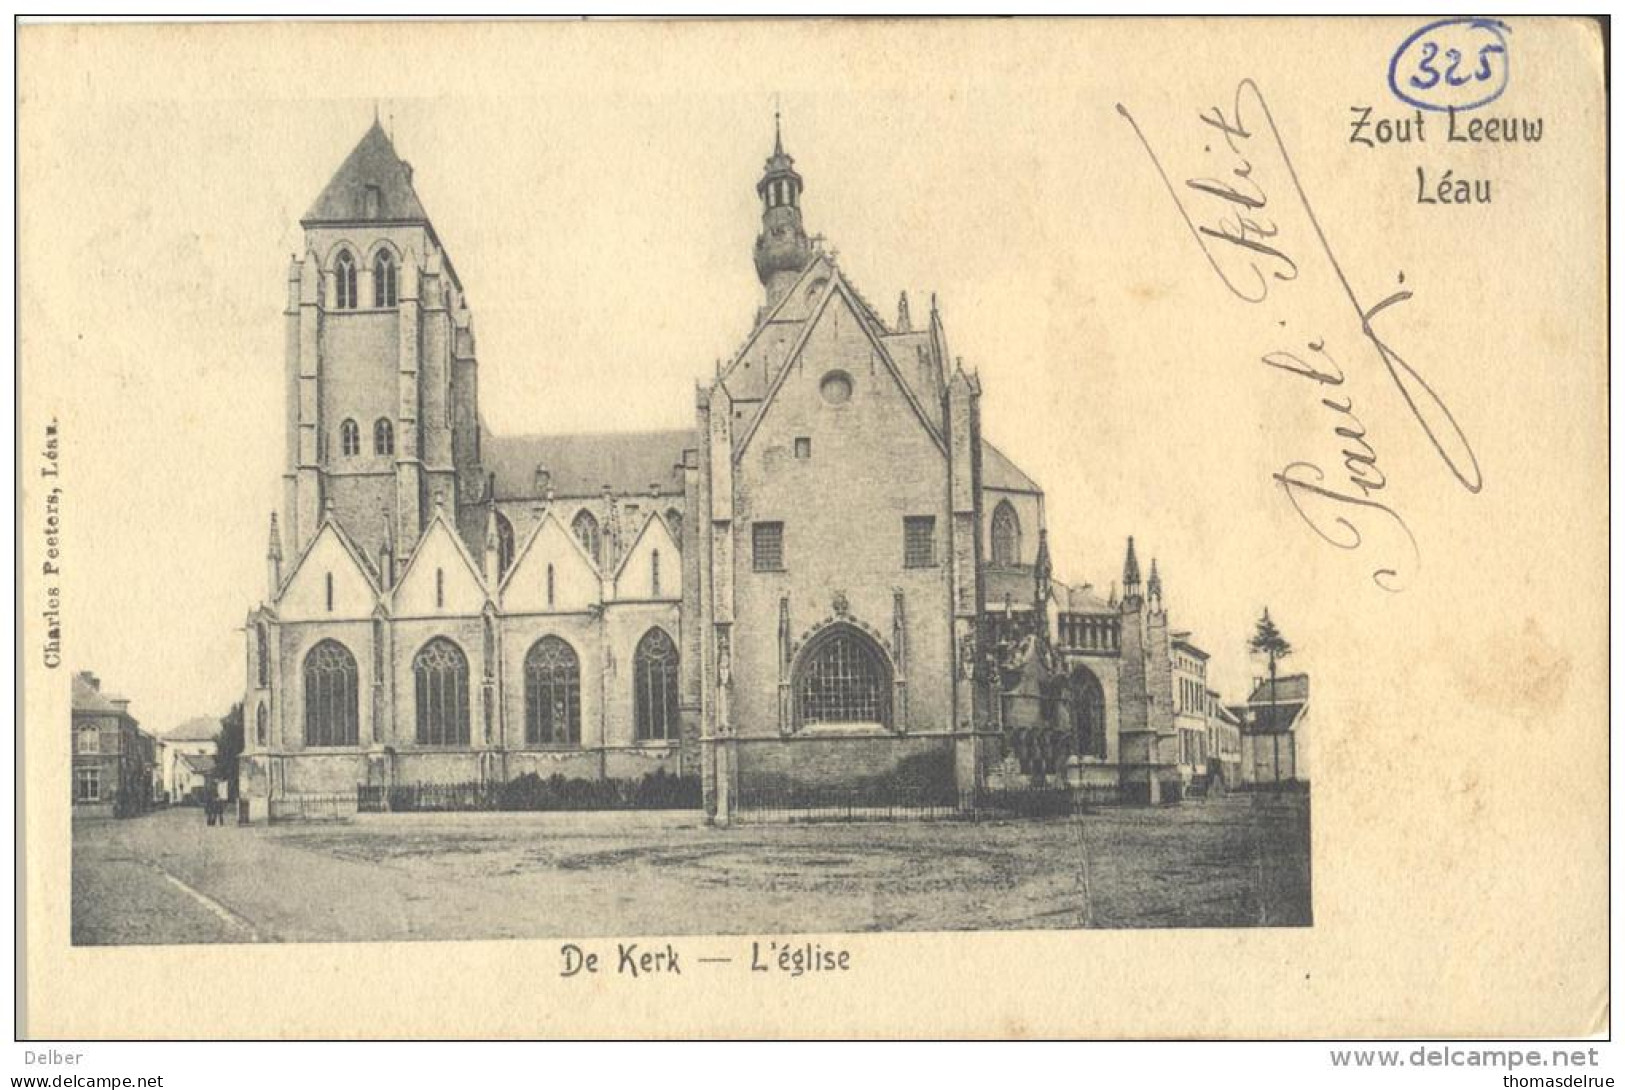 Op906:  ZOUTLEEUW  Léau  De Kerk - L'Eglise  Charles Peeters, Léau  1909 - Zoutleeuw